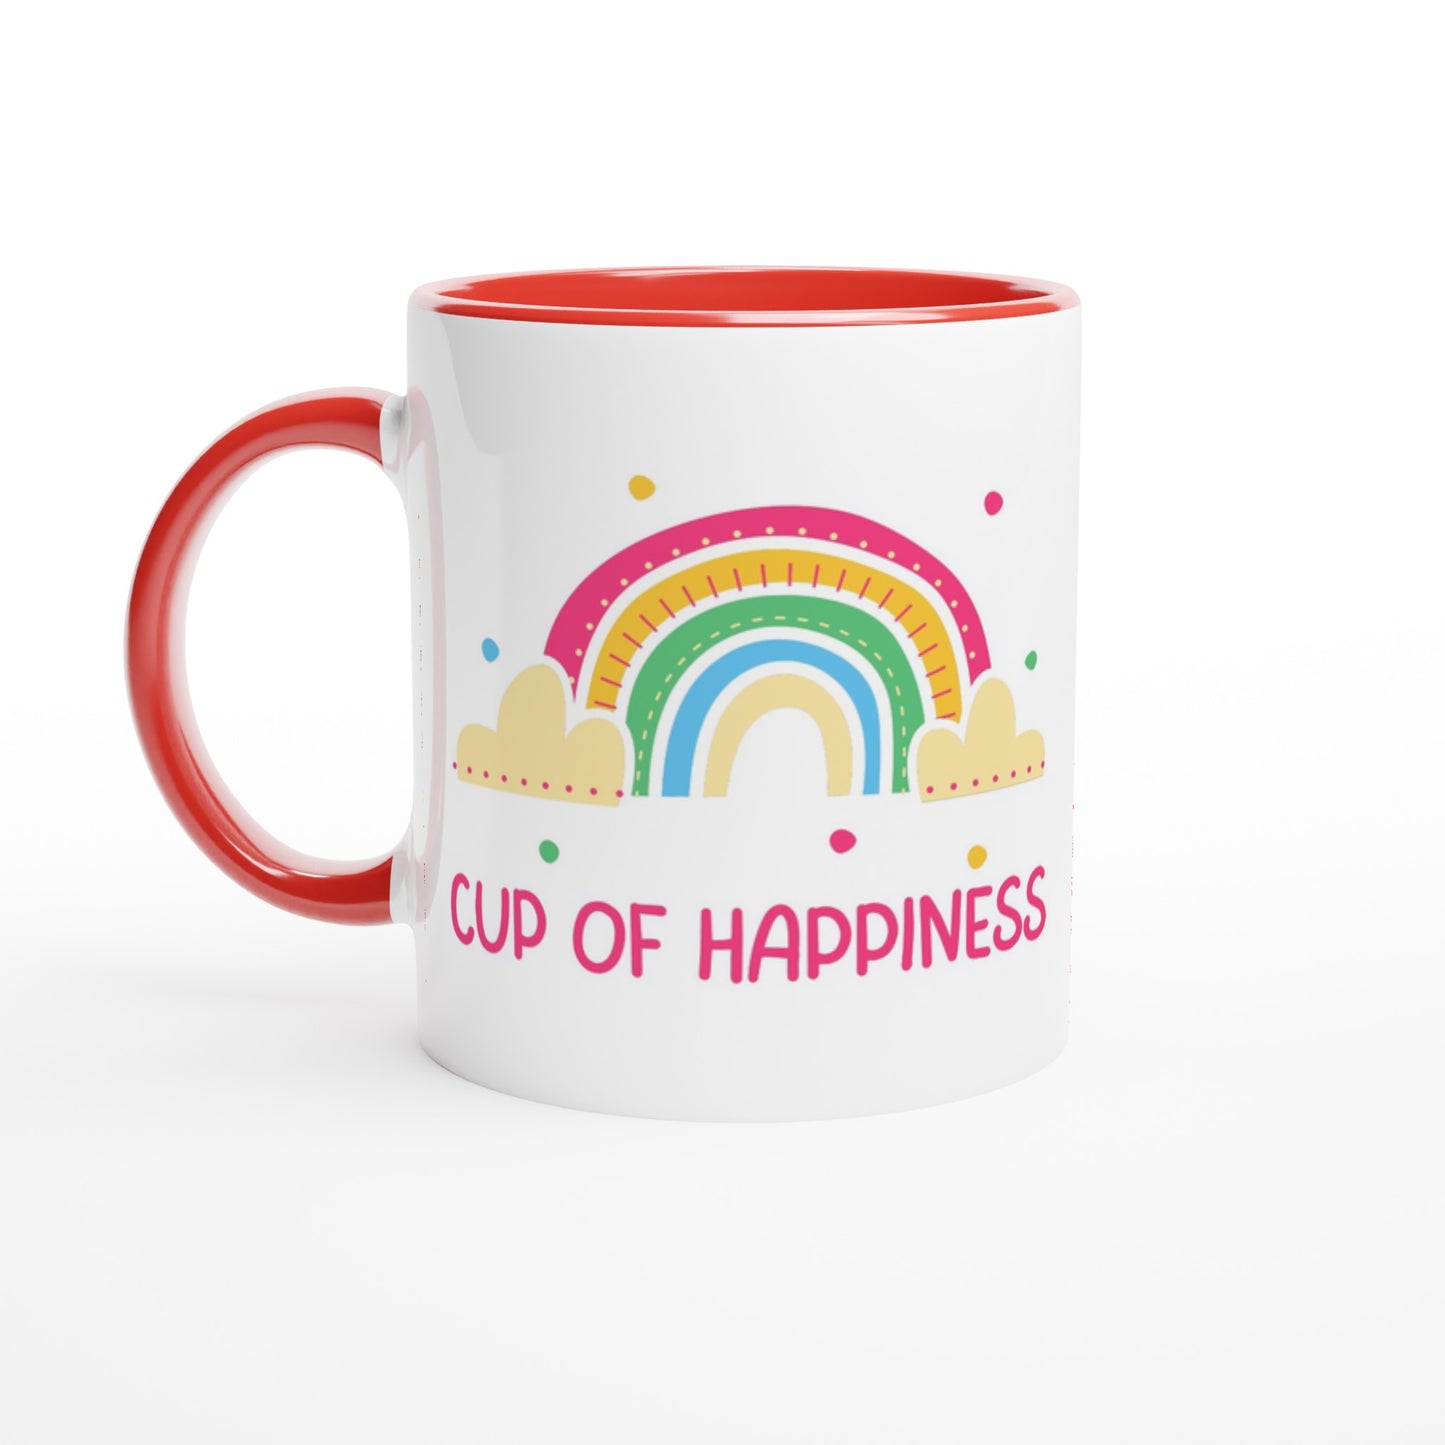 Cup Of Happiness - White 11oz Ceramic Mug with Colour Inside Ceramic Red Colour 11oz Mug positivity